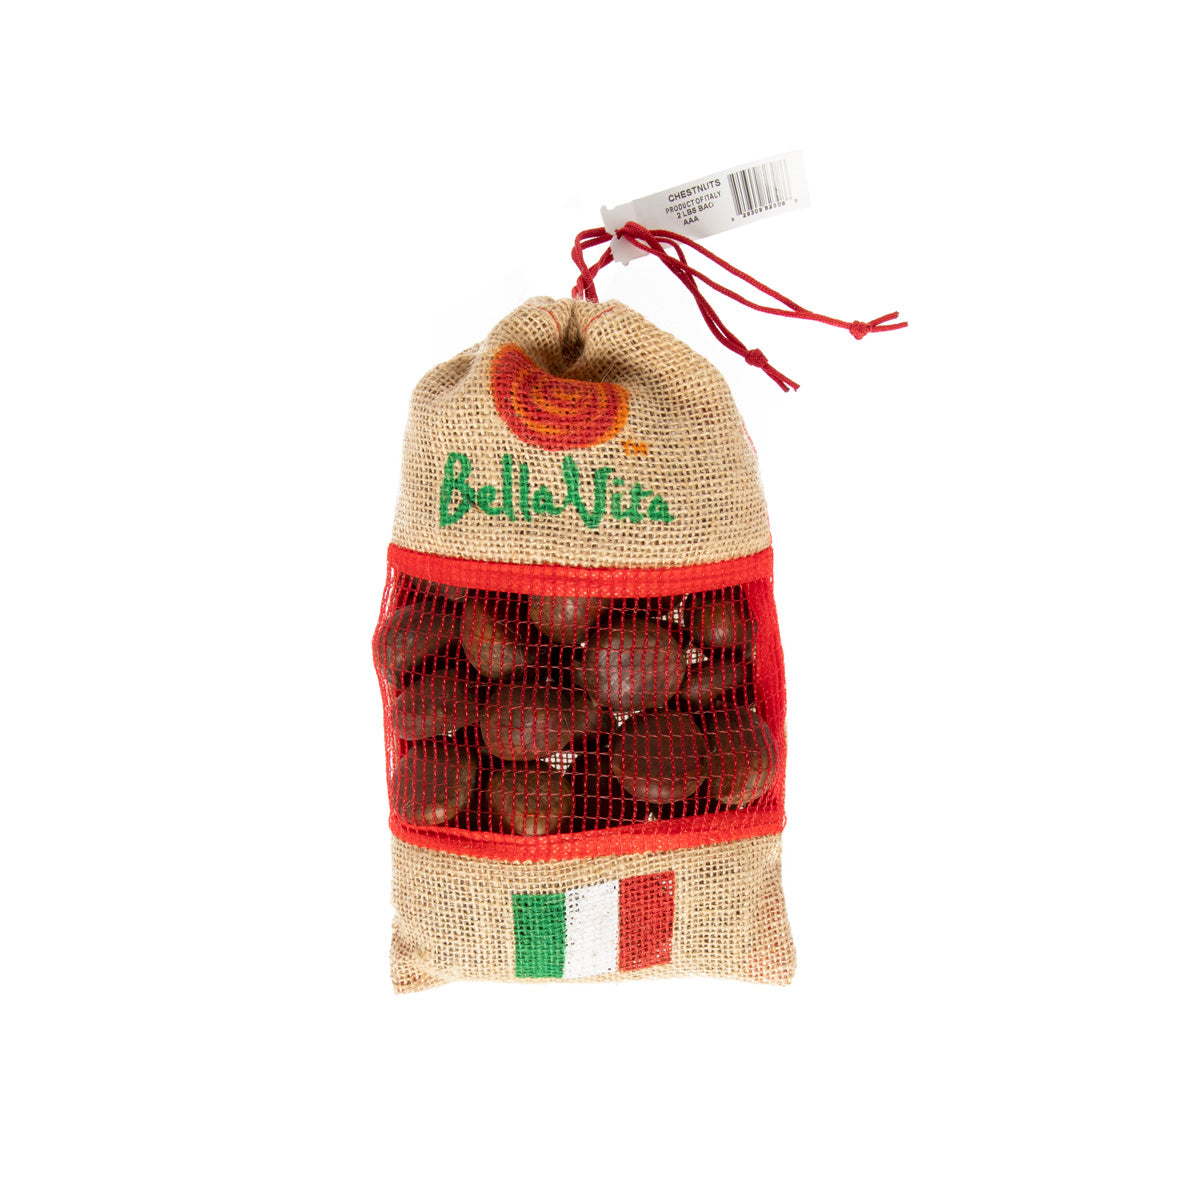 BoxNCase Italian AAA Chestnuts